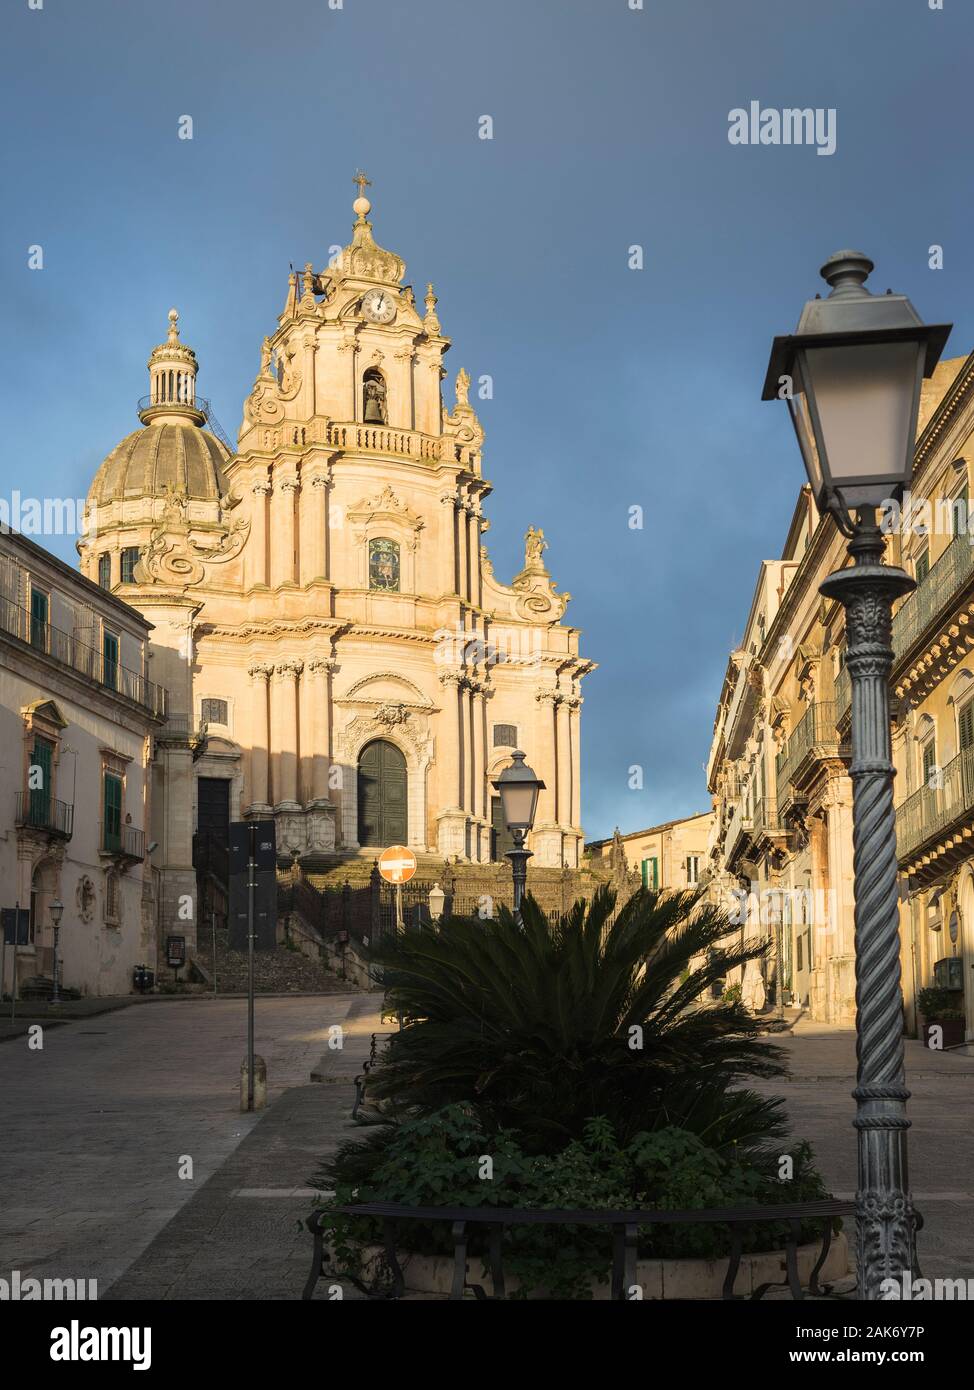 Die Kathedrale Duomo di San Giorgio, Ragusa Ibla, Sizilien, Italien Stockfoto